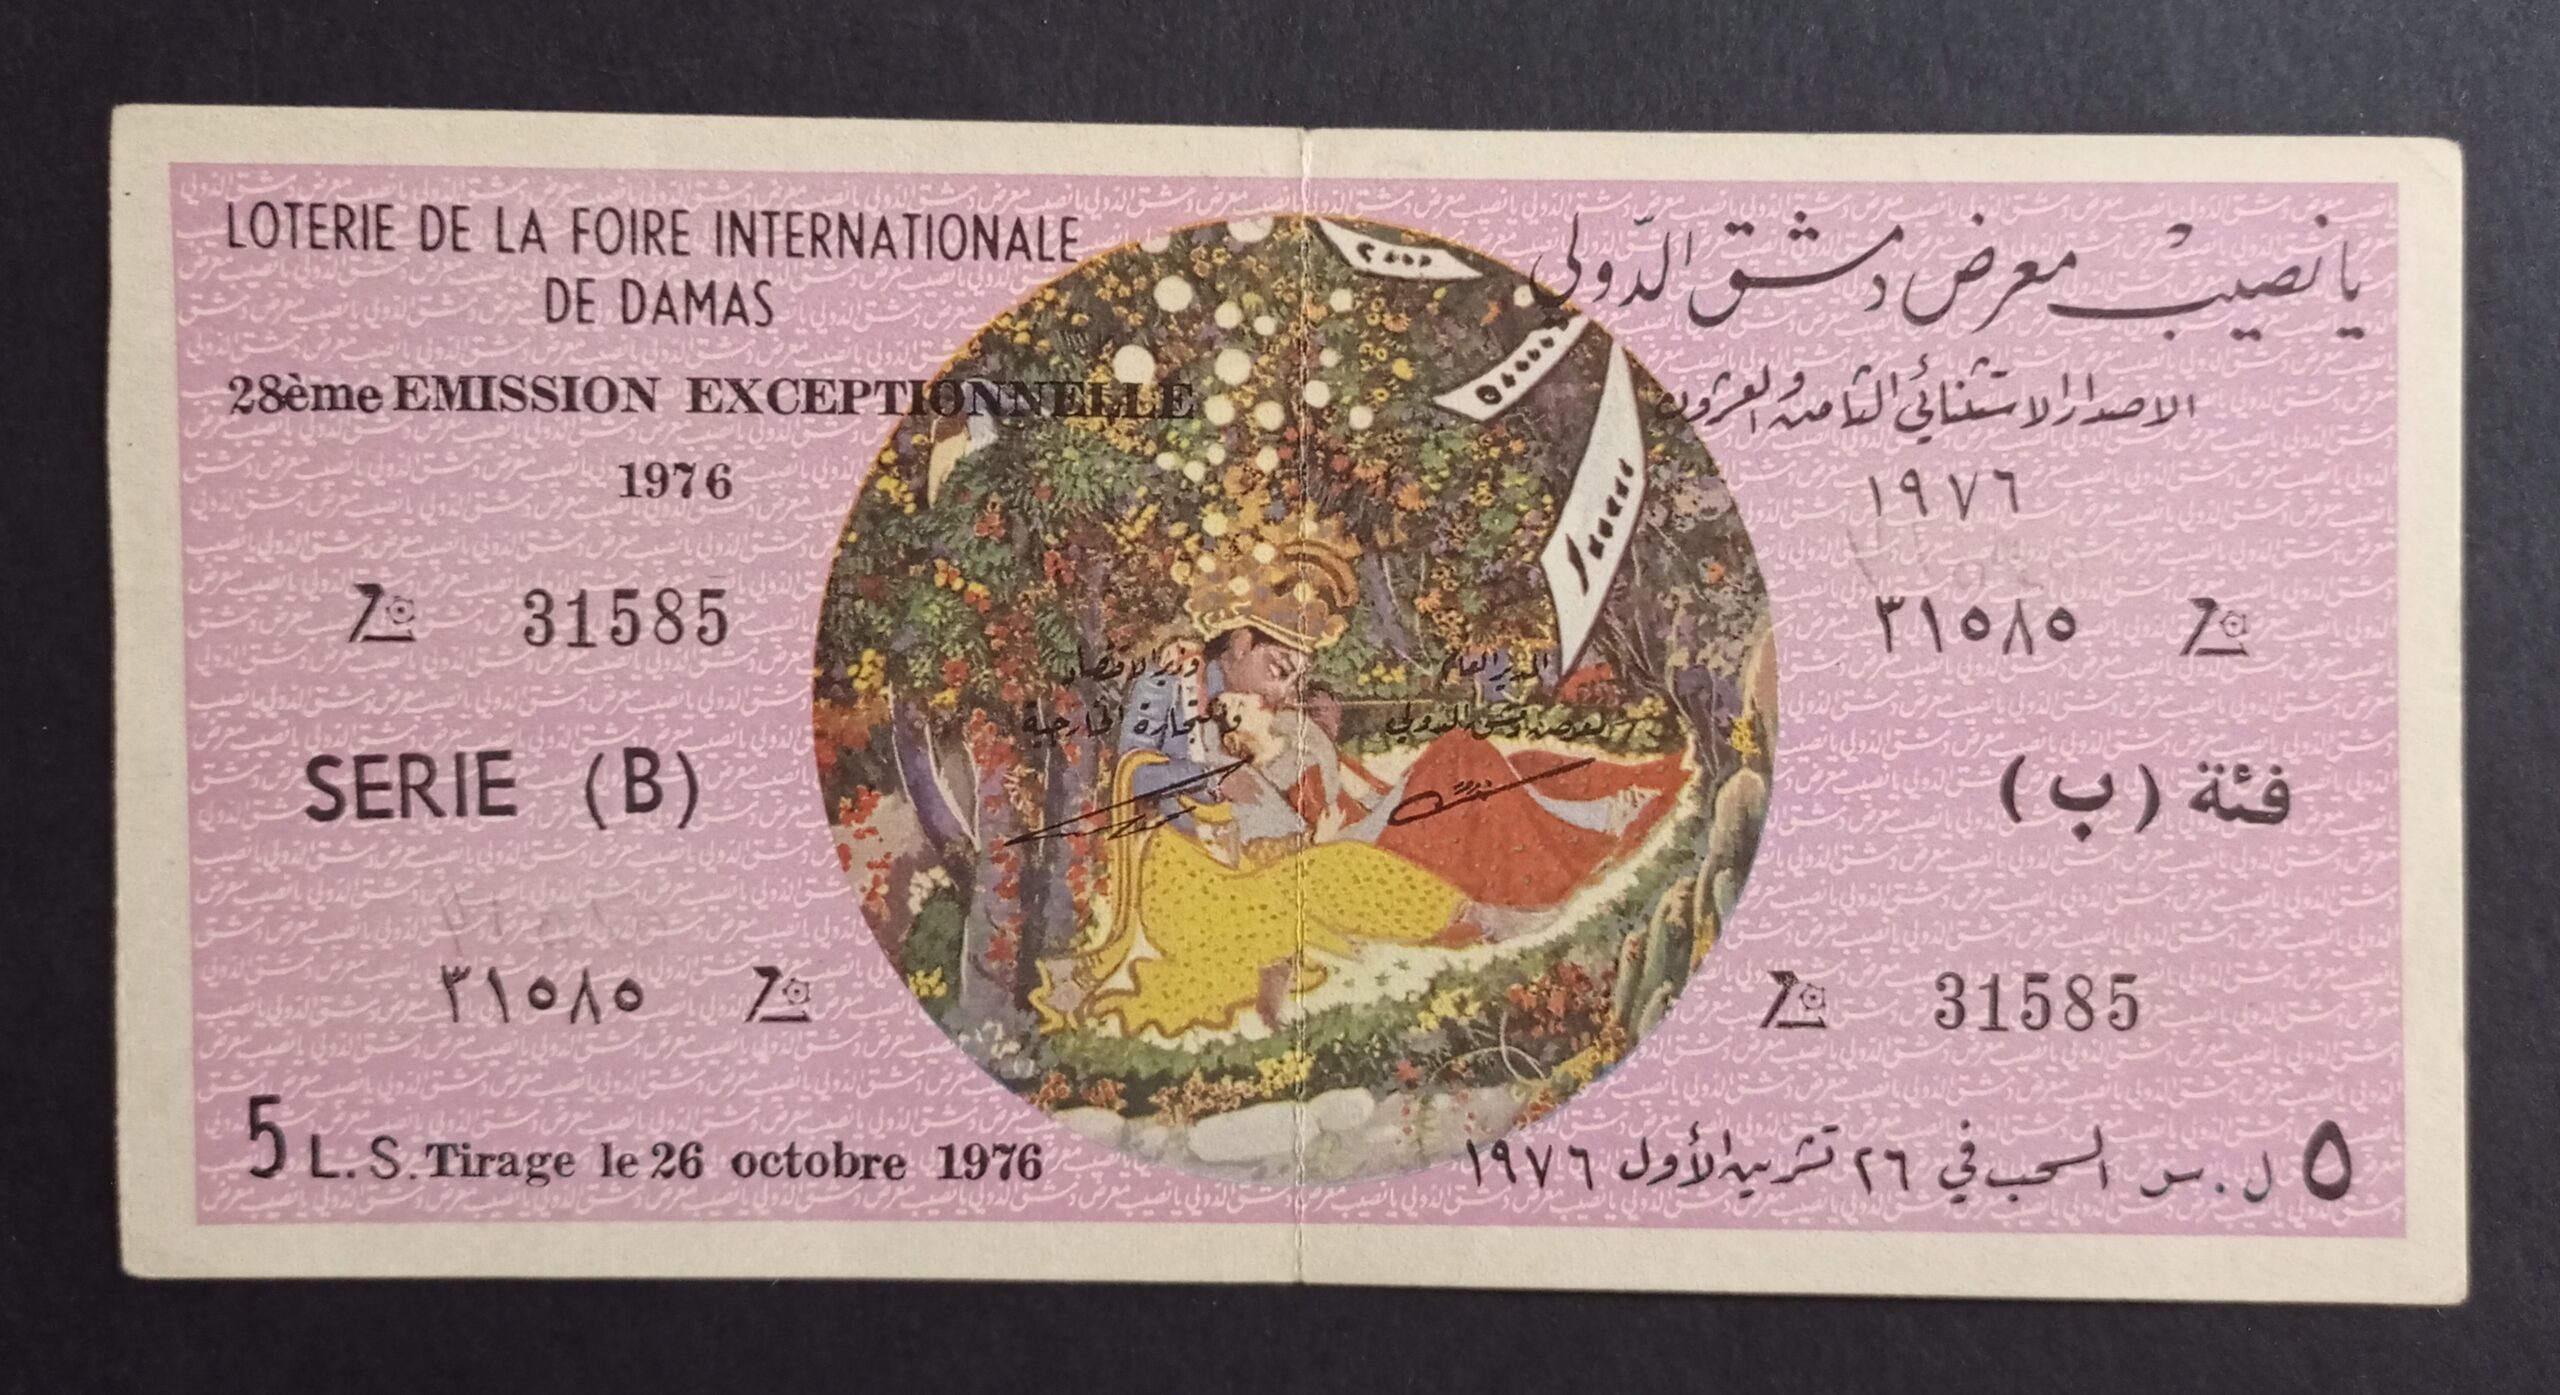 التاريخ السوري المعاصر - يانصيب معرض دمشق الدولي - الإصدار الإستثنائي الثامن والعشرون - فئة (ب) عام 1976